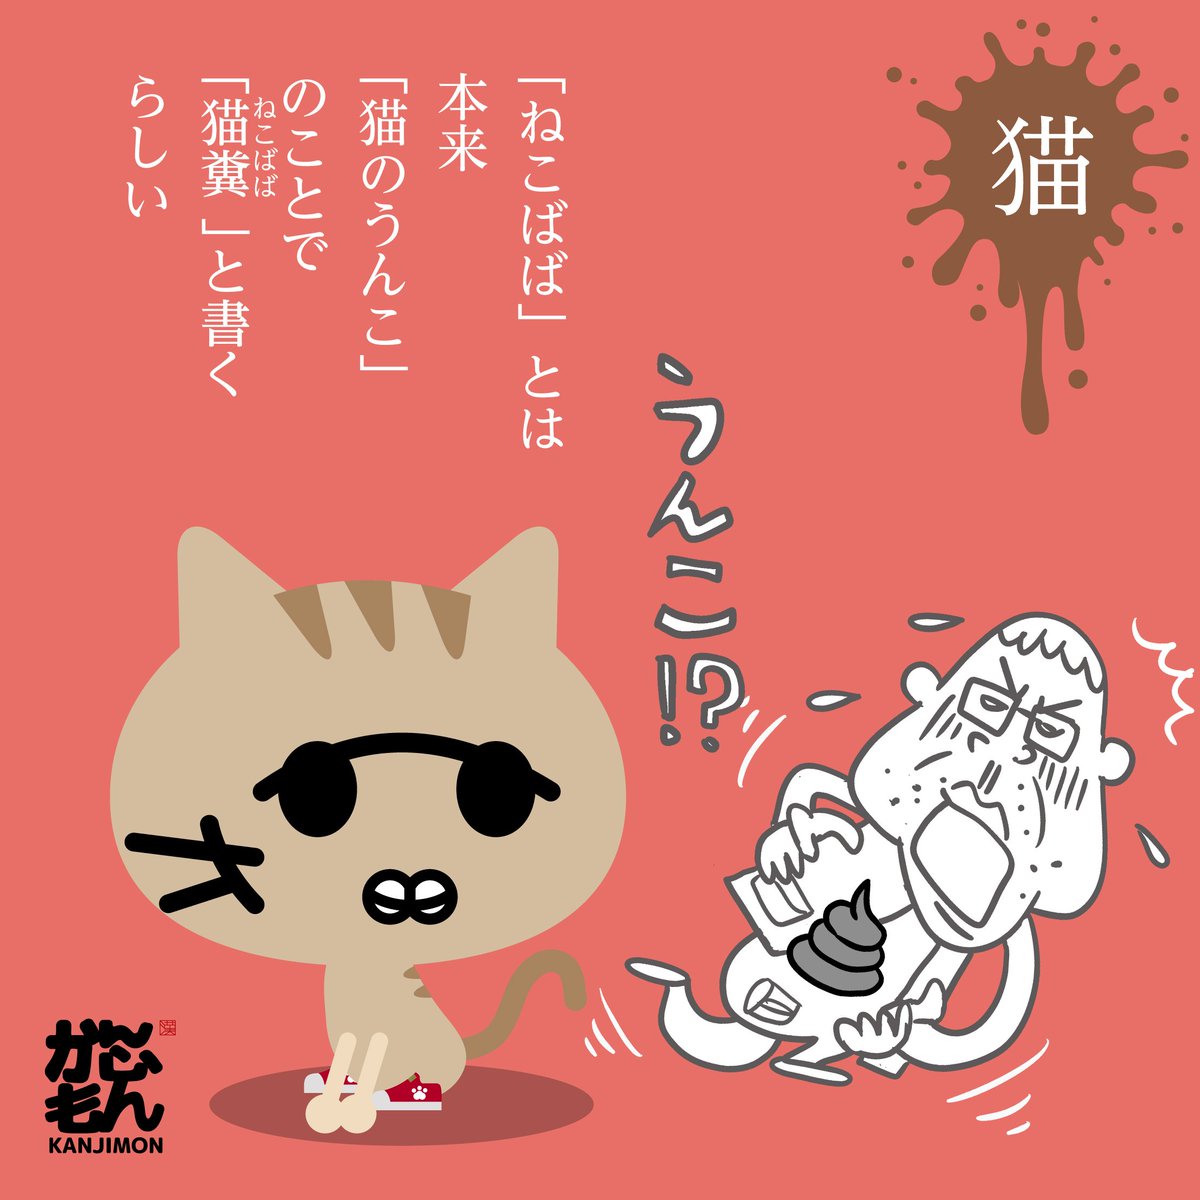 ネコババとは 他人のものをこっそり隠して自分のものにするという意味です 猫が かんじもん Kanjimon の漫画